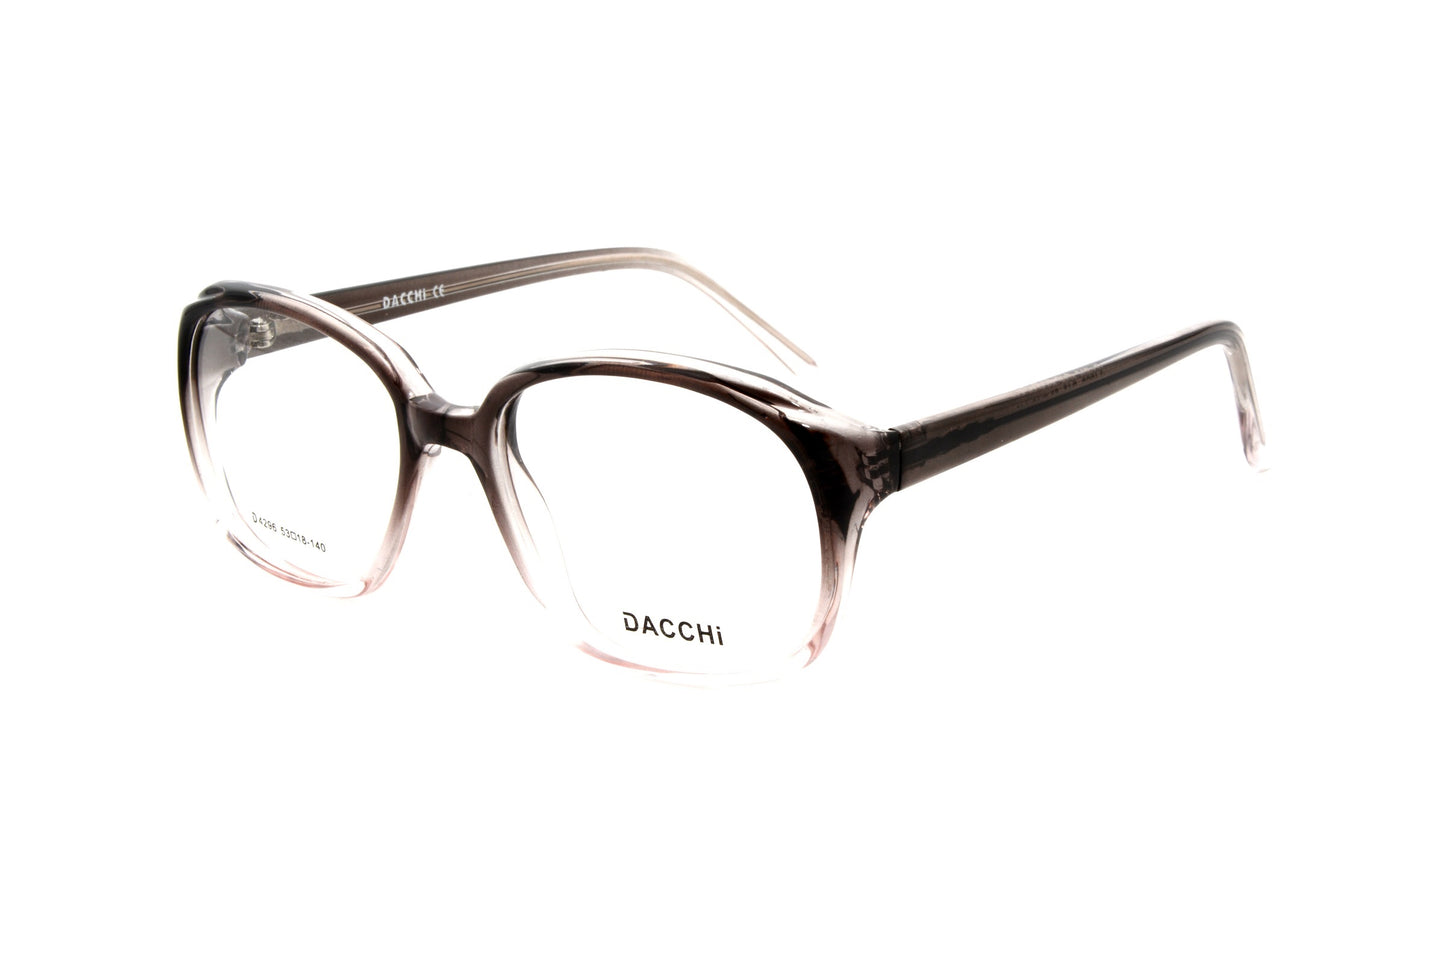 Dacchi eyewear 4296 C45